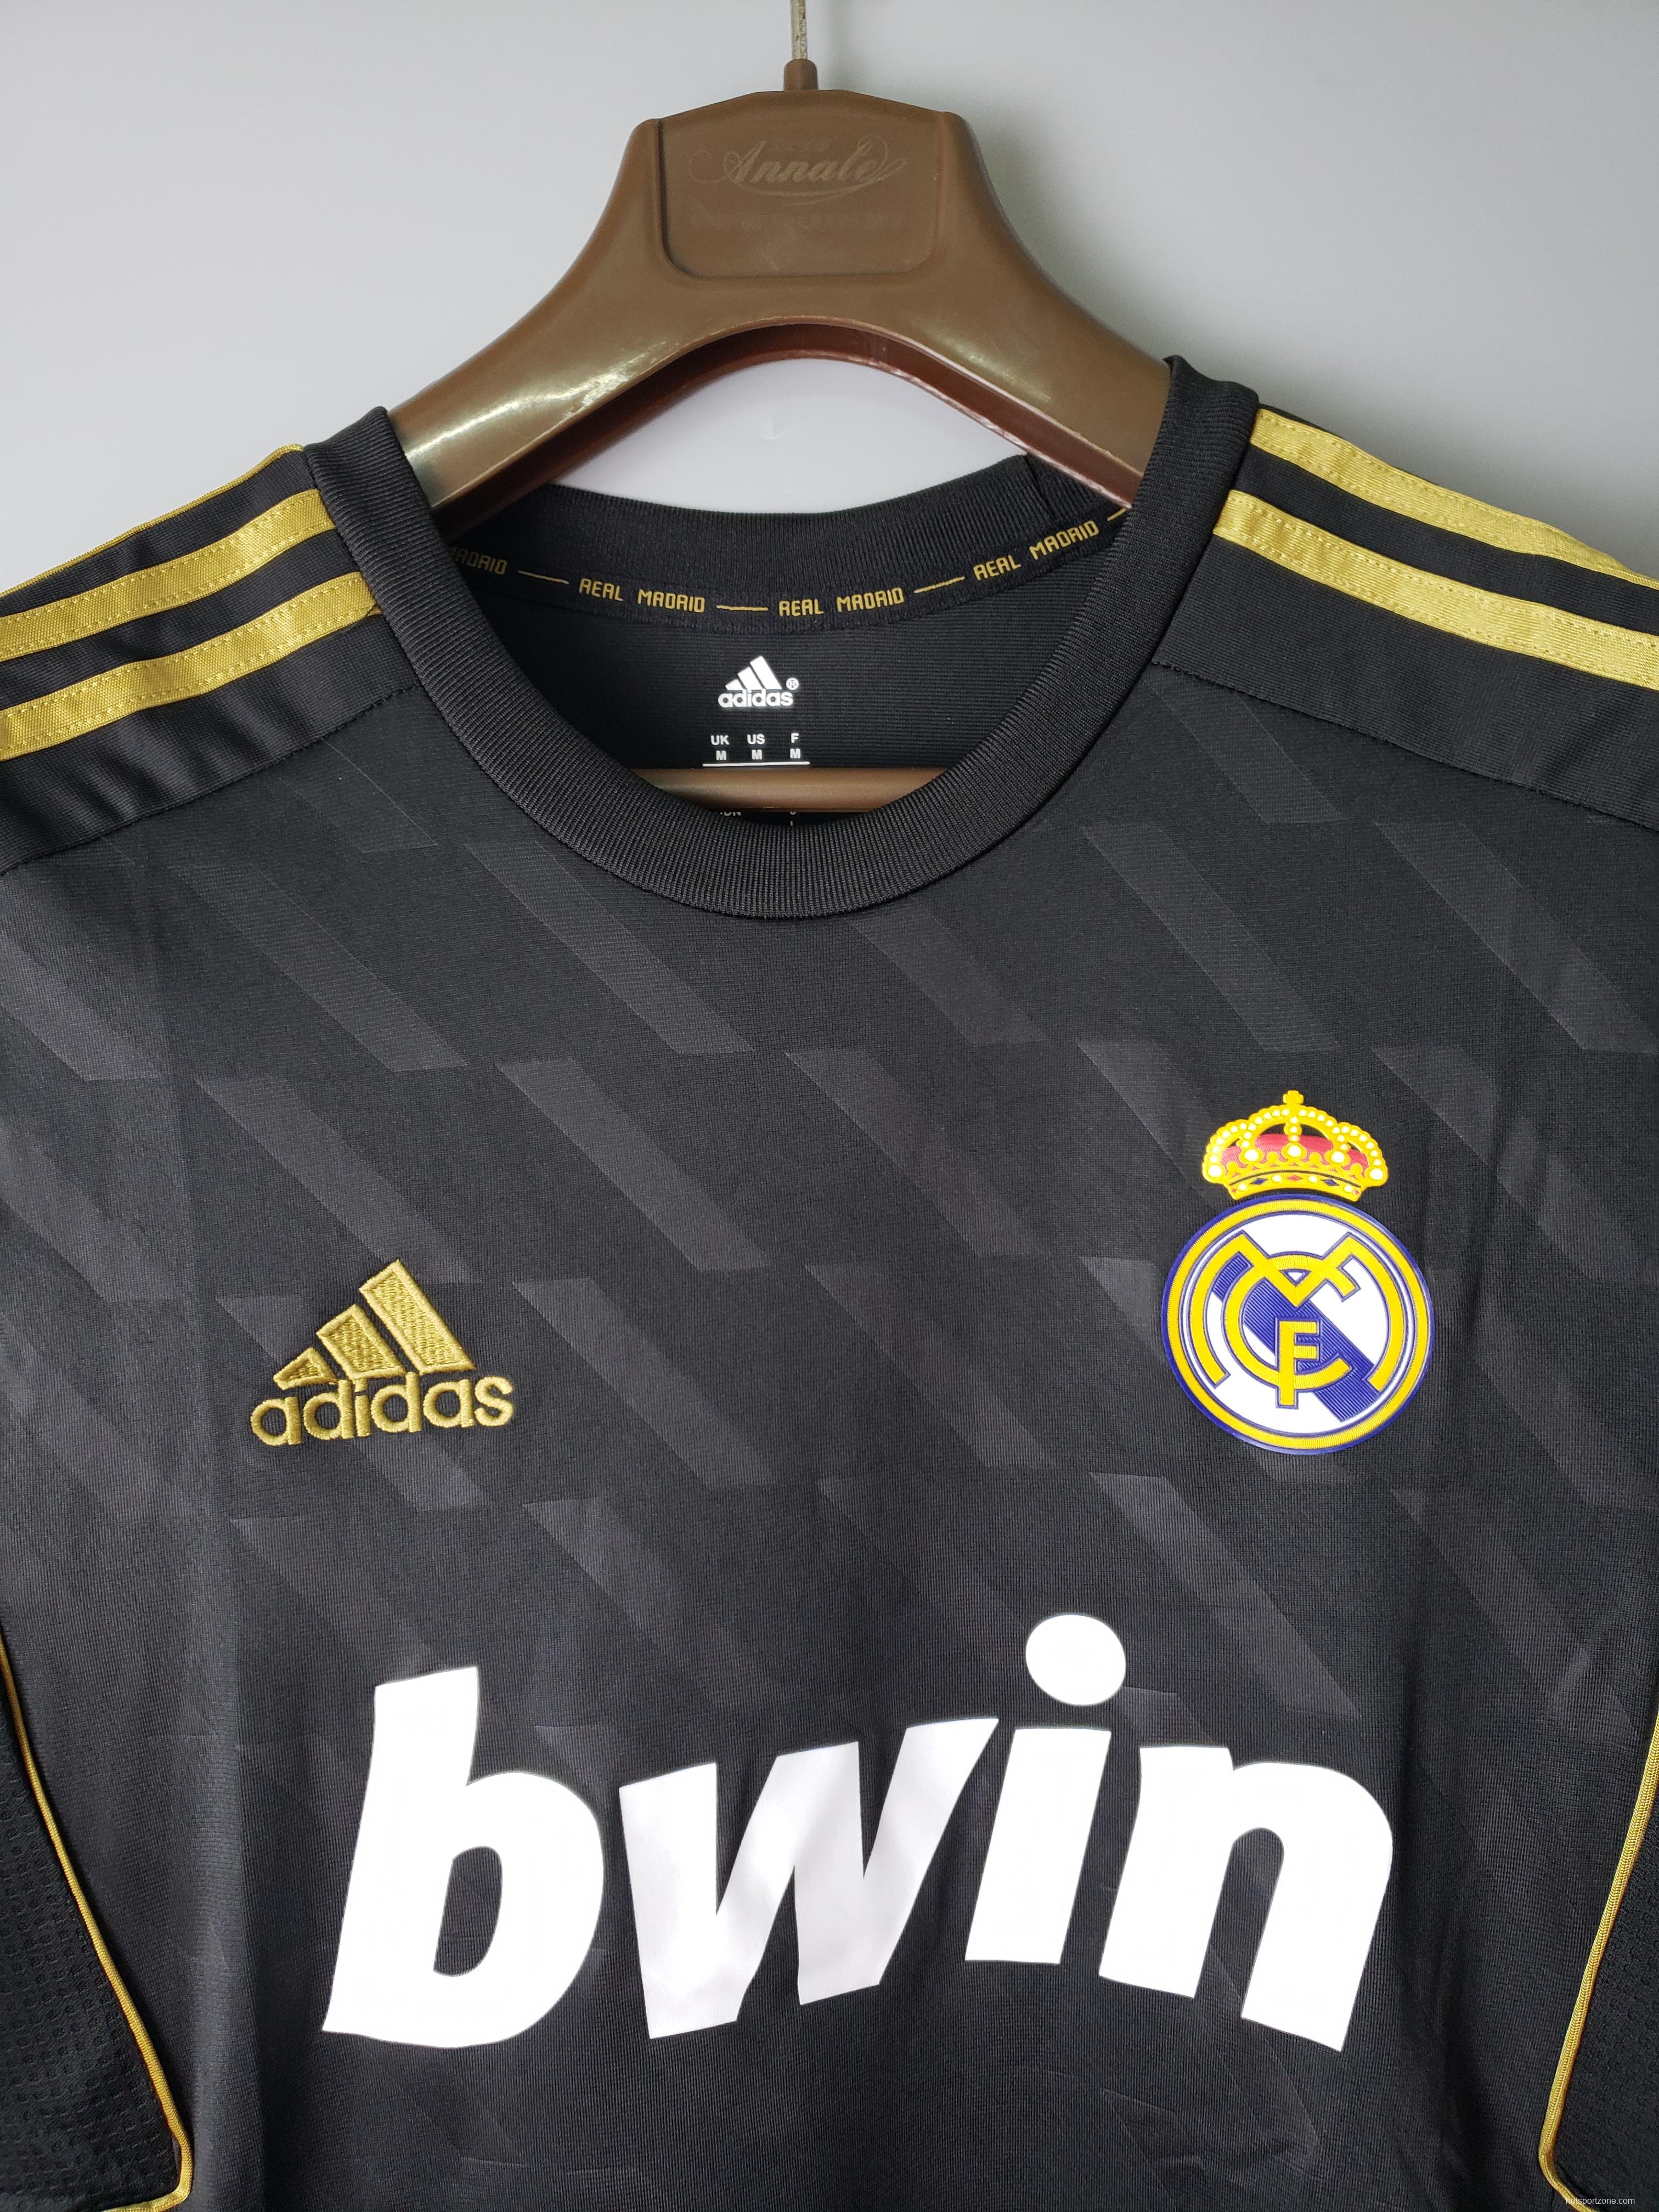 2012 Real Madrid black short sleeve Soccer Jersey